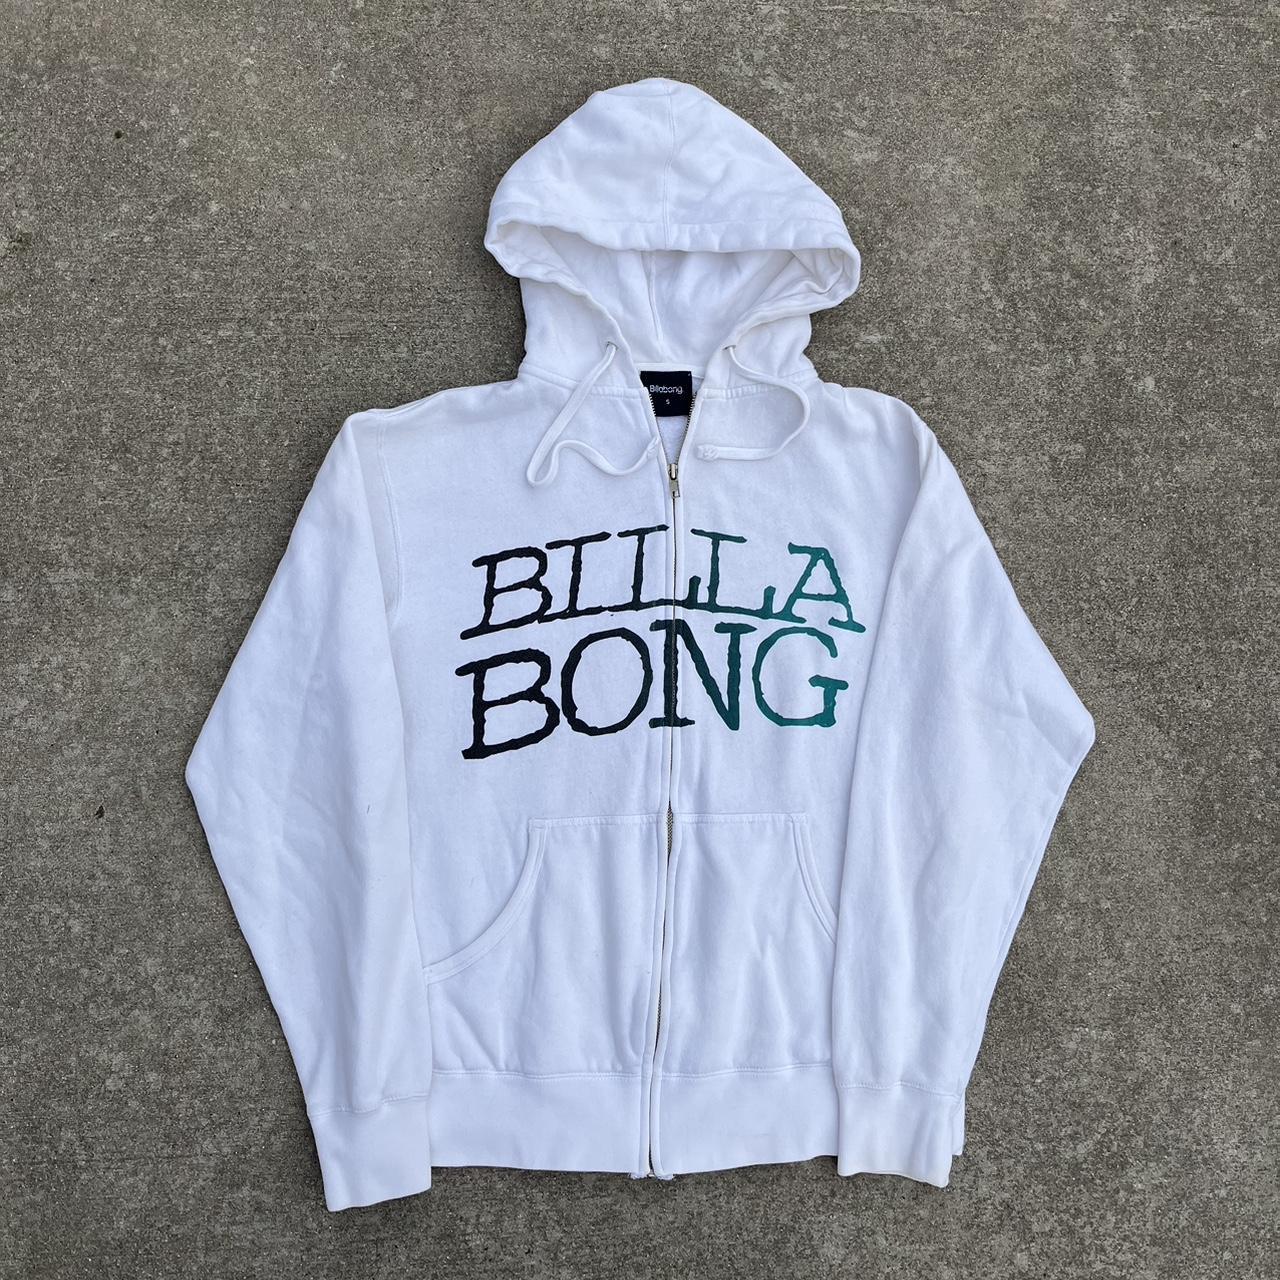 Vintage 2000s billa bong hoodie Nice essential Size... - Depop